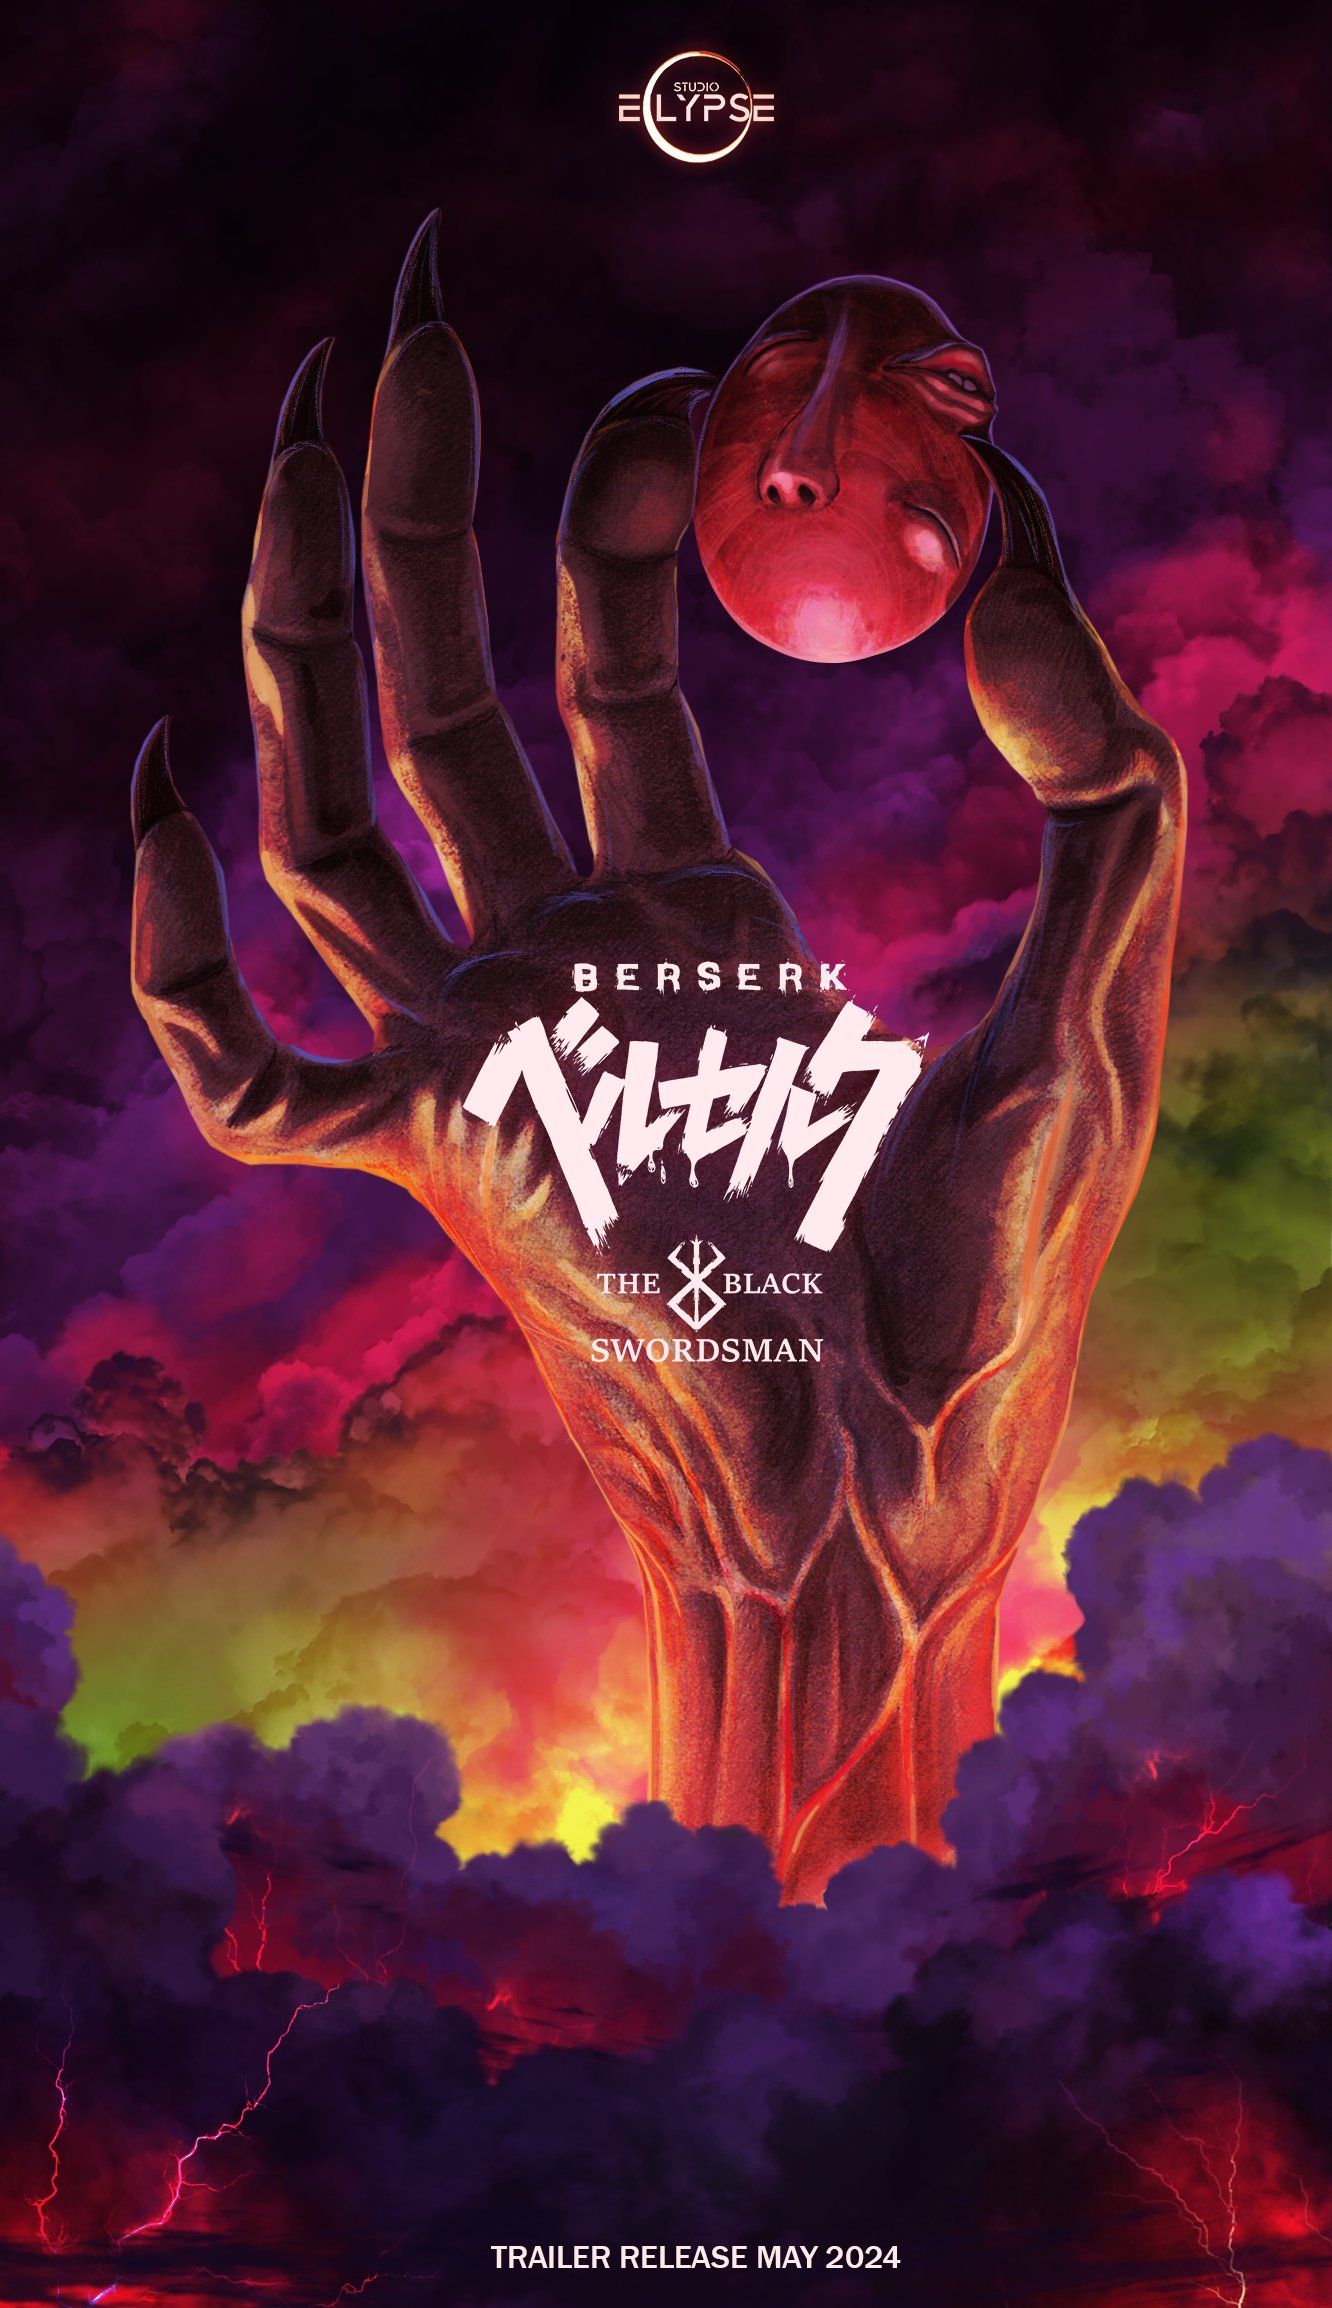 Berserk: The Black Swordsman от Studio Eclypse получает новый ключевой арт перед выпуском трейлера